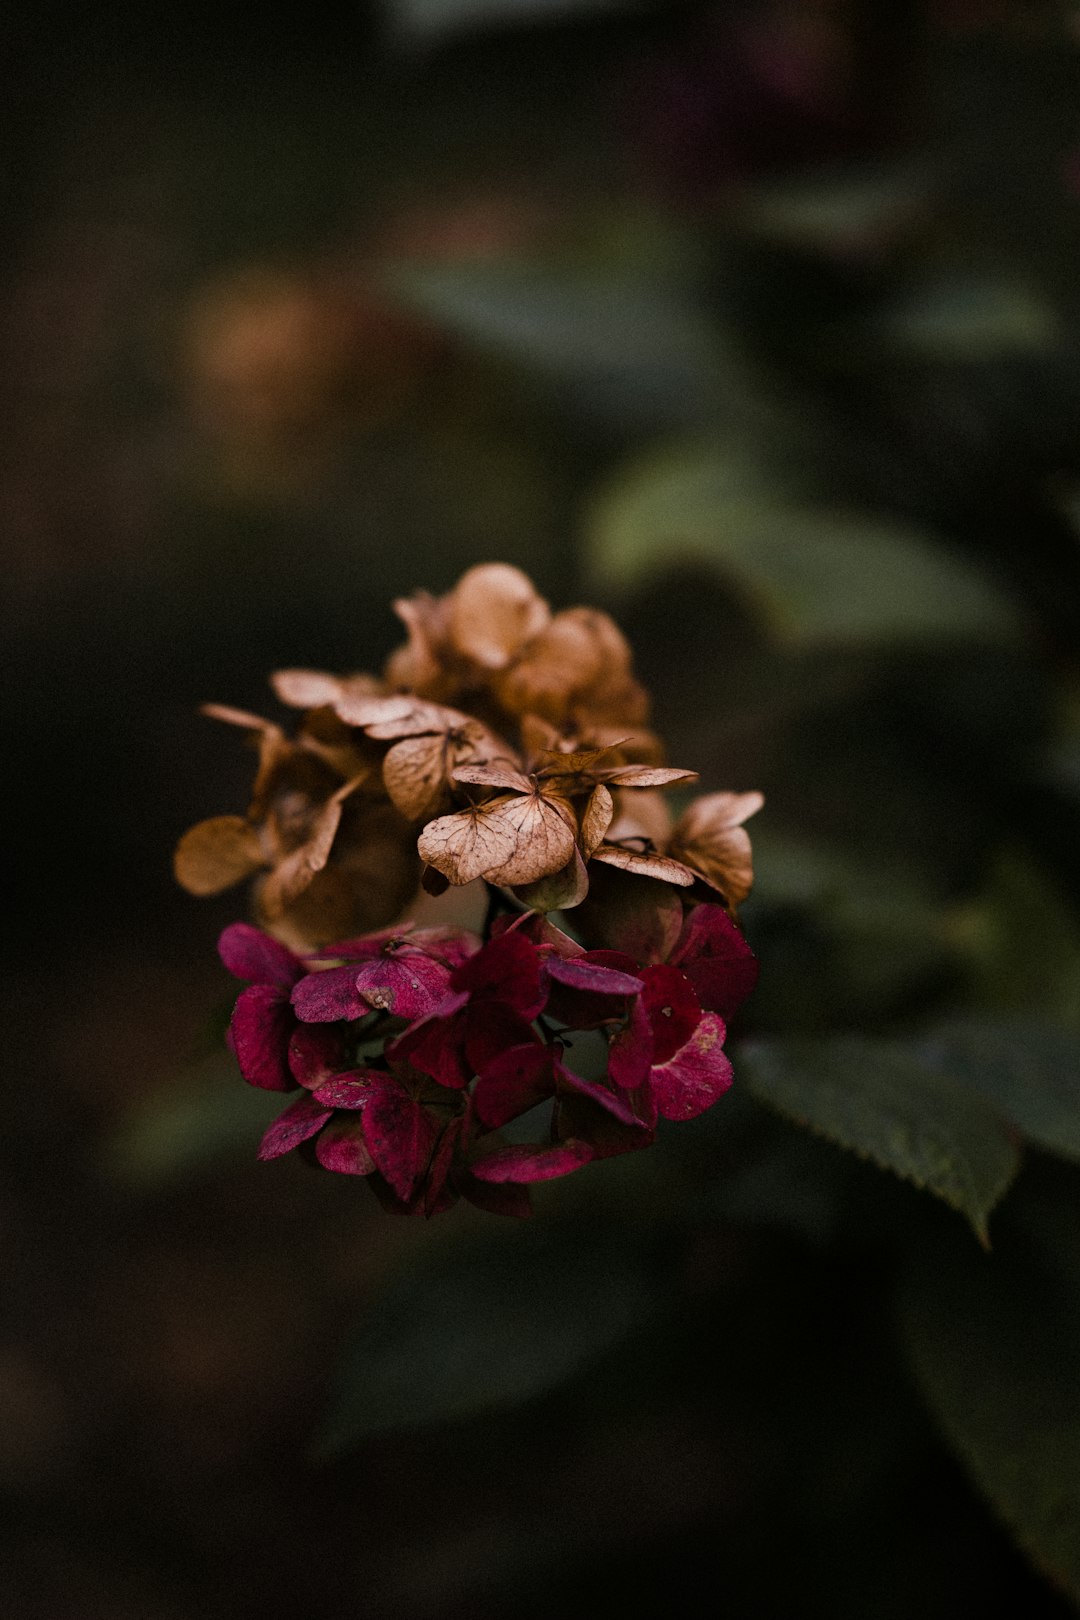 brown and pink flower in tilt shift lens